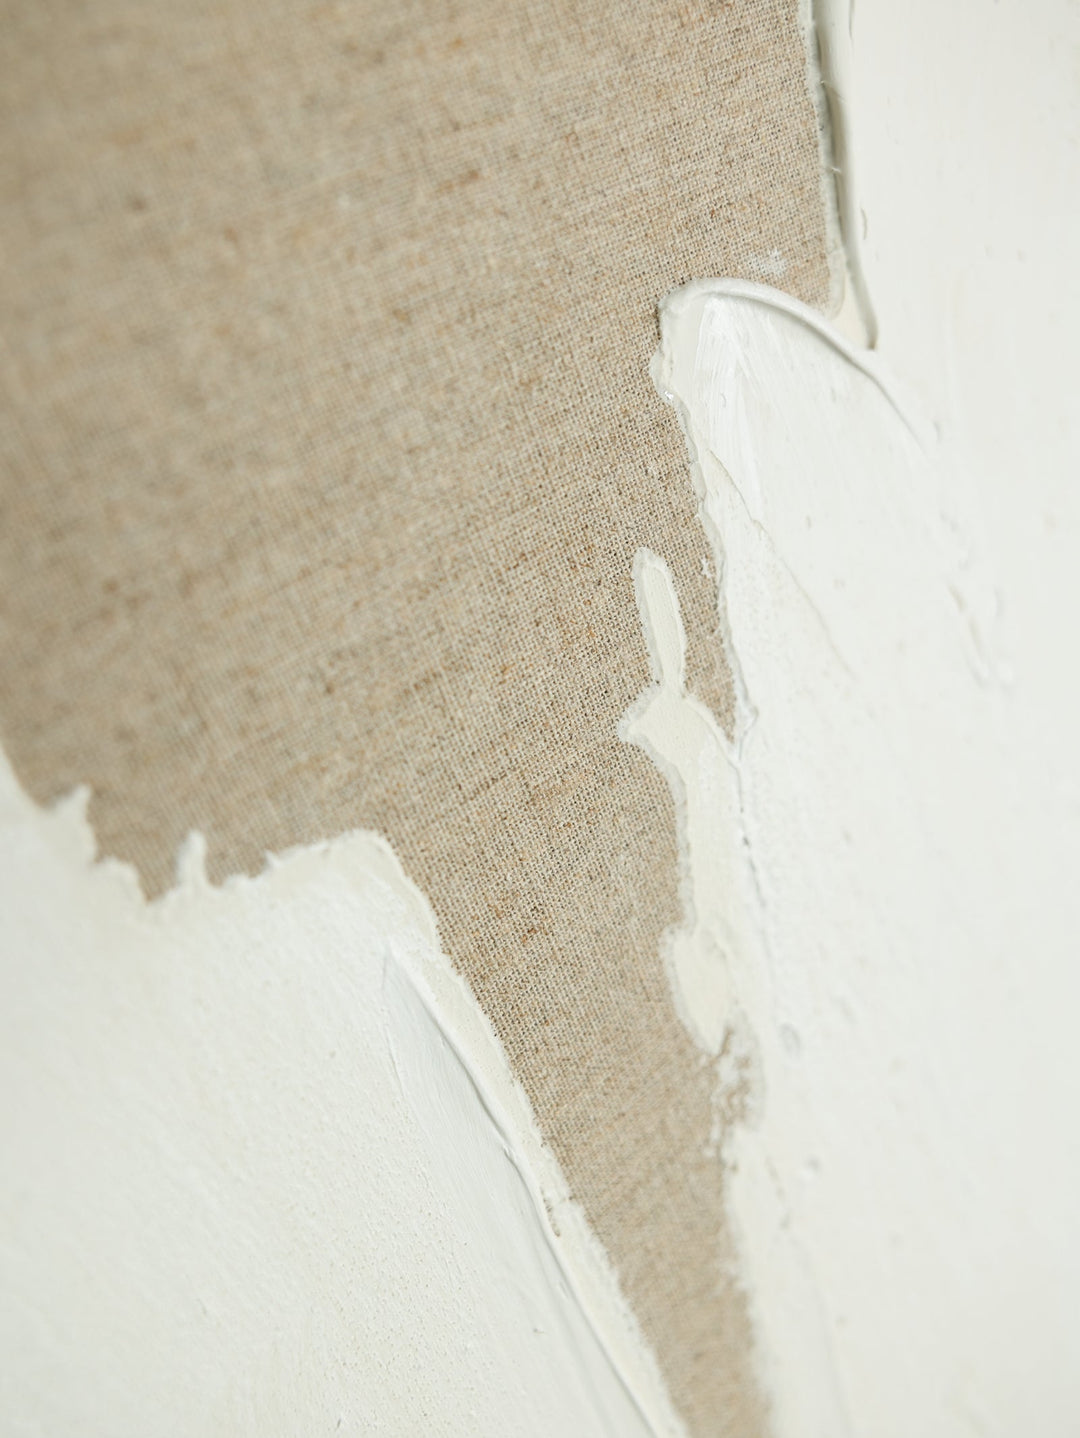 Simplicity Wall Art in Linen - Wall Art- Hertex Haus Online - abstract art